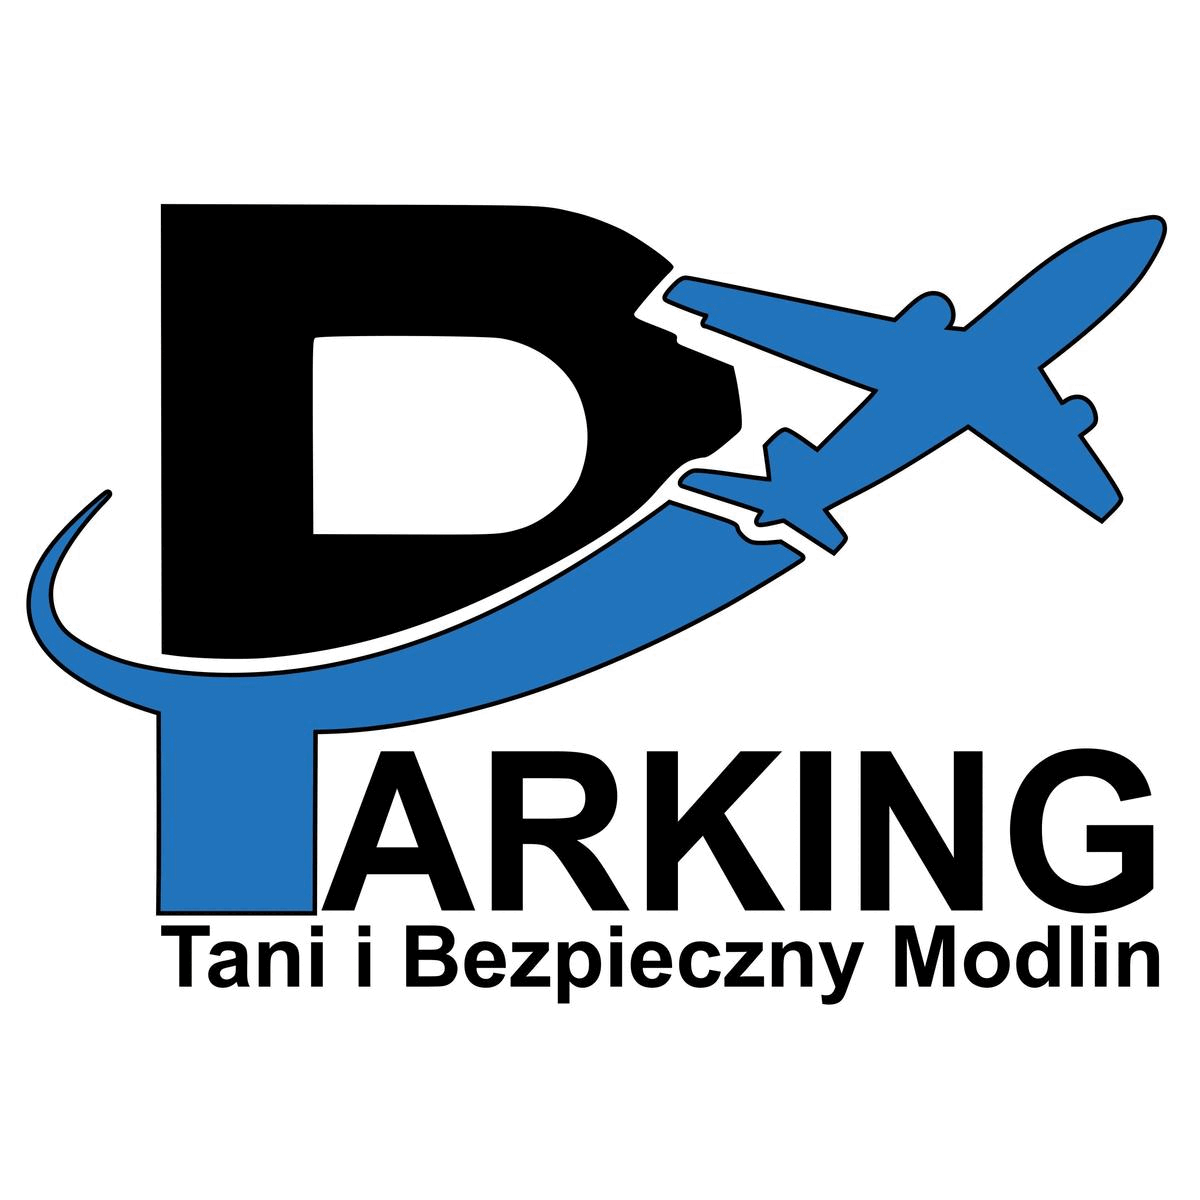 PARKING MODLIN SMART Tani I Bezpieczny logo